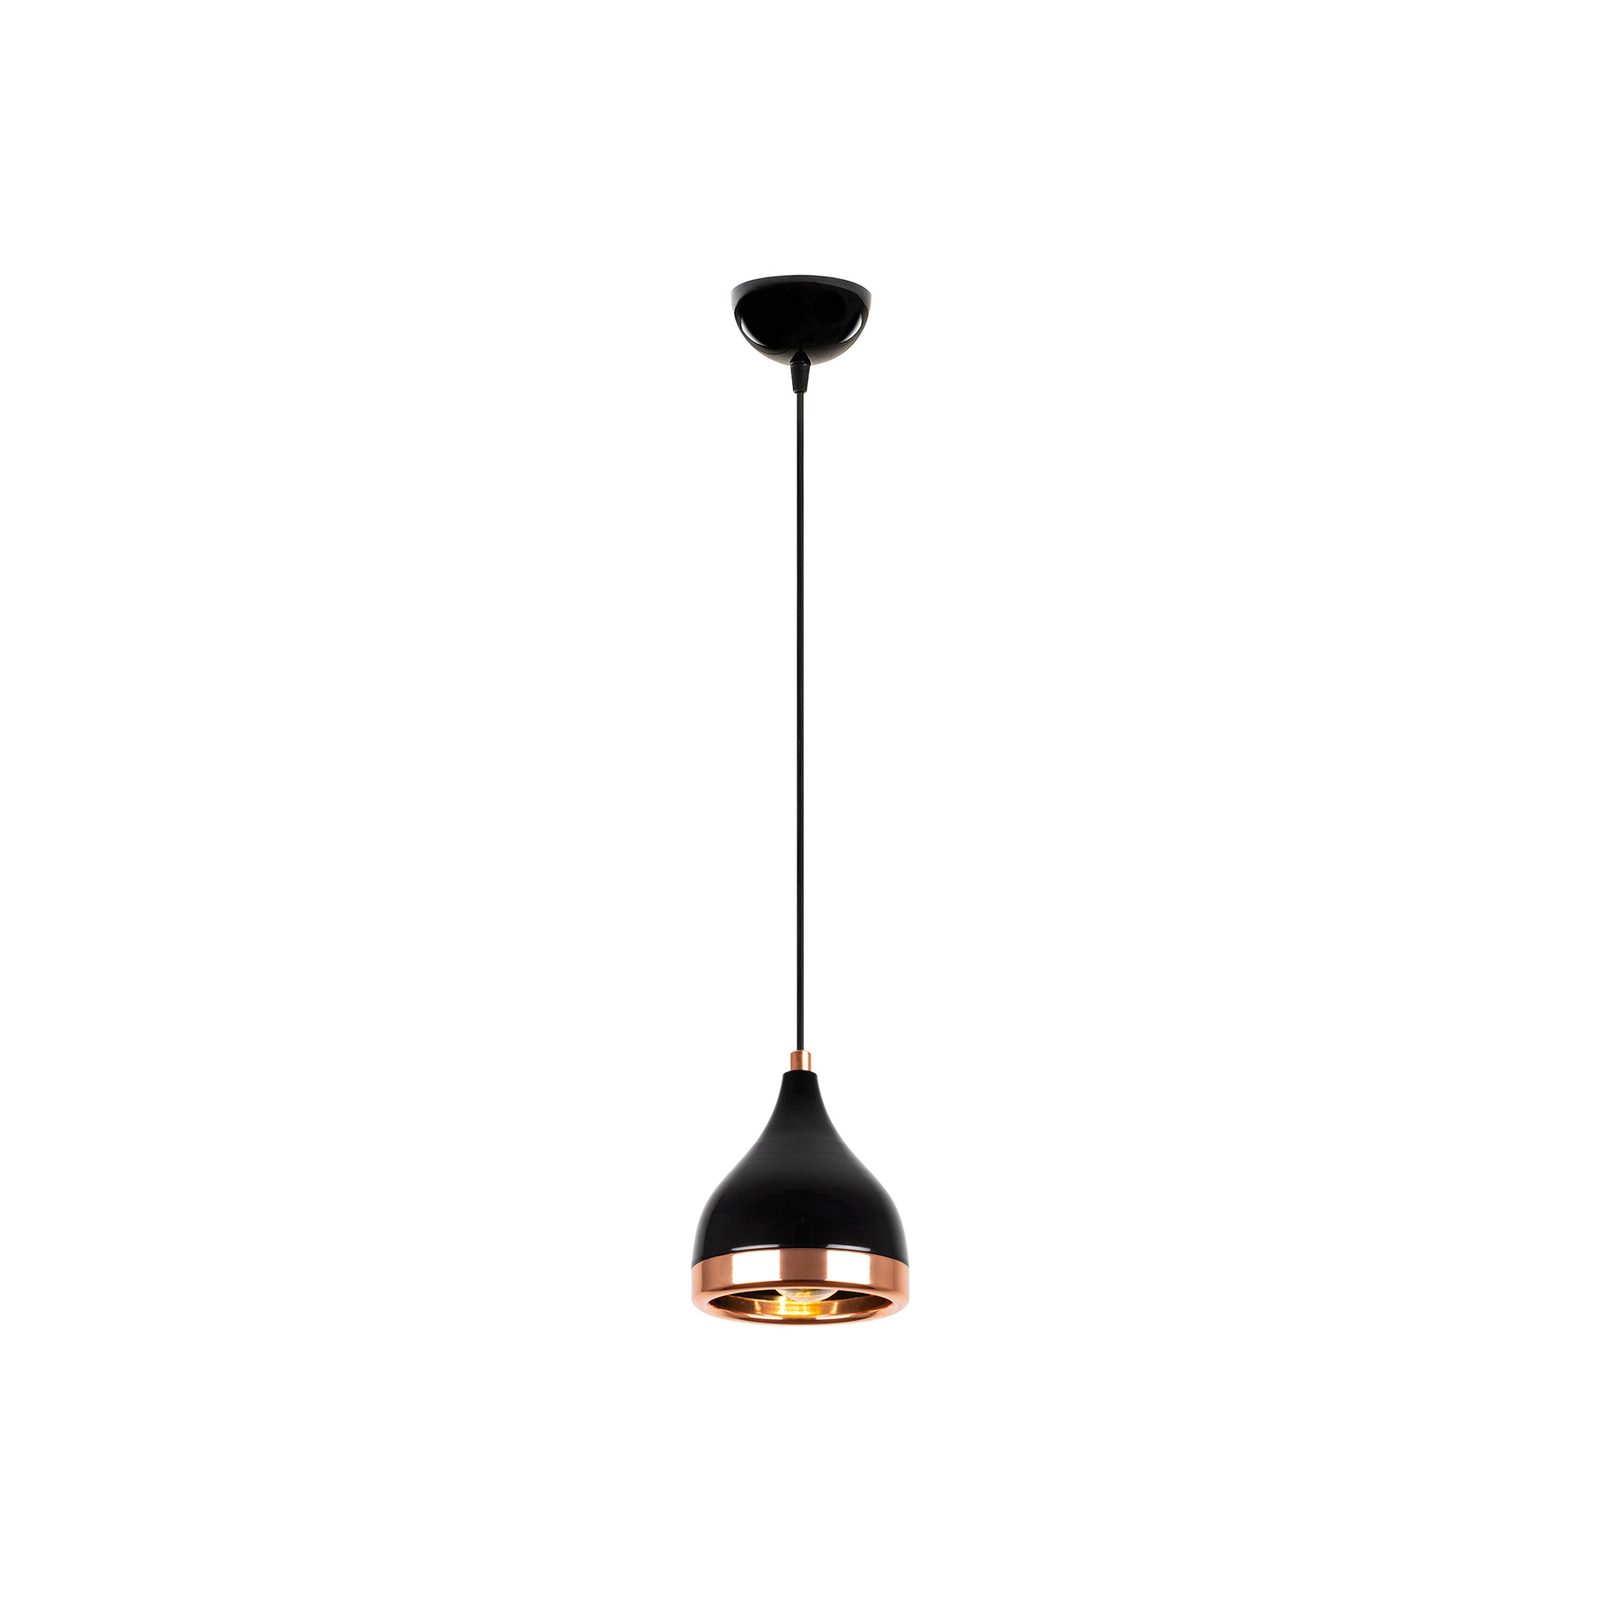 Hanglamp Yildo 7000 1-lamp Ø15cm zwart/koper